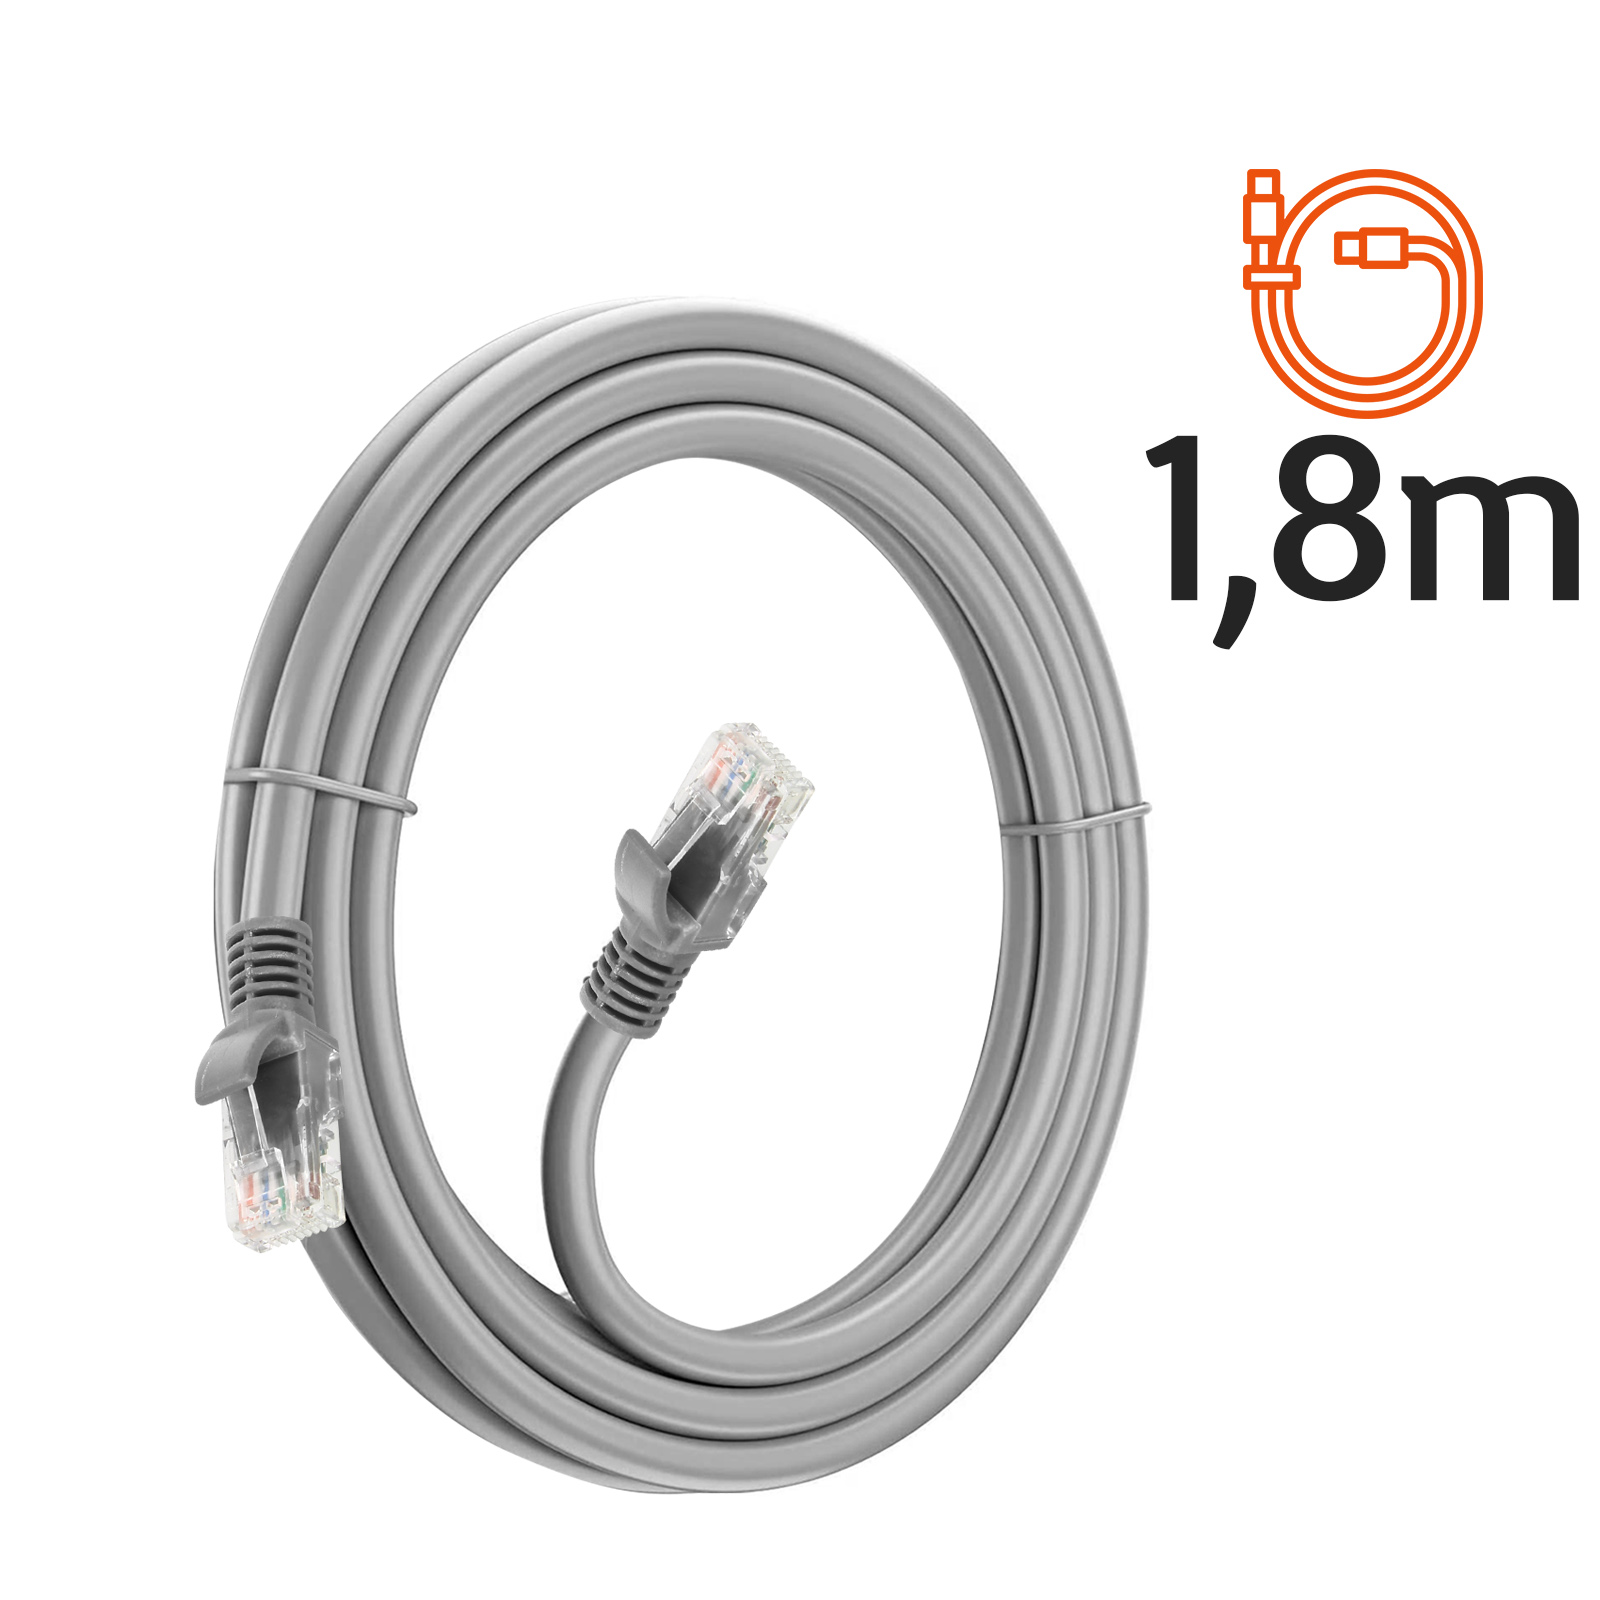 LINQ RJ45 CAT6, 1.8m, Ethernet m Ethernet, Kabel, 1,8